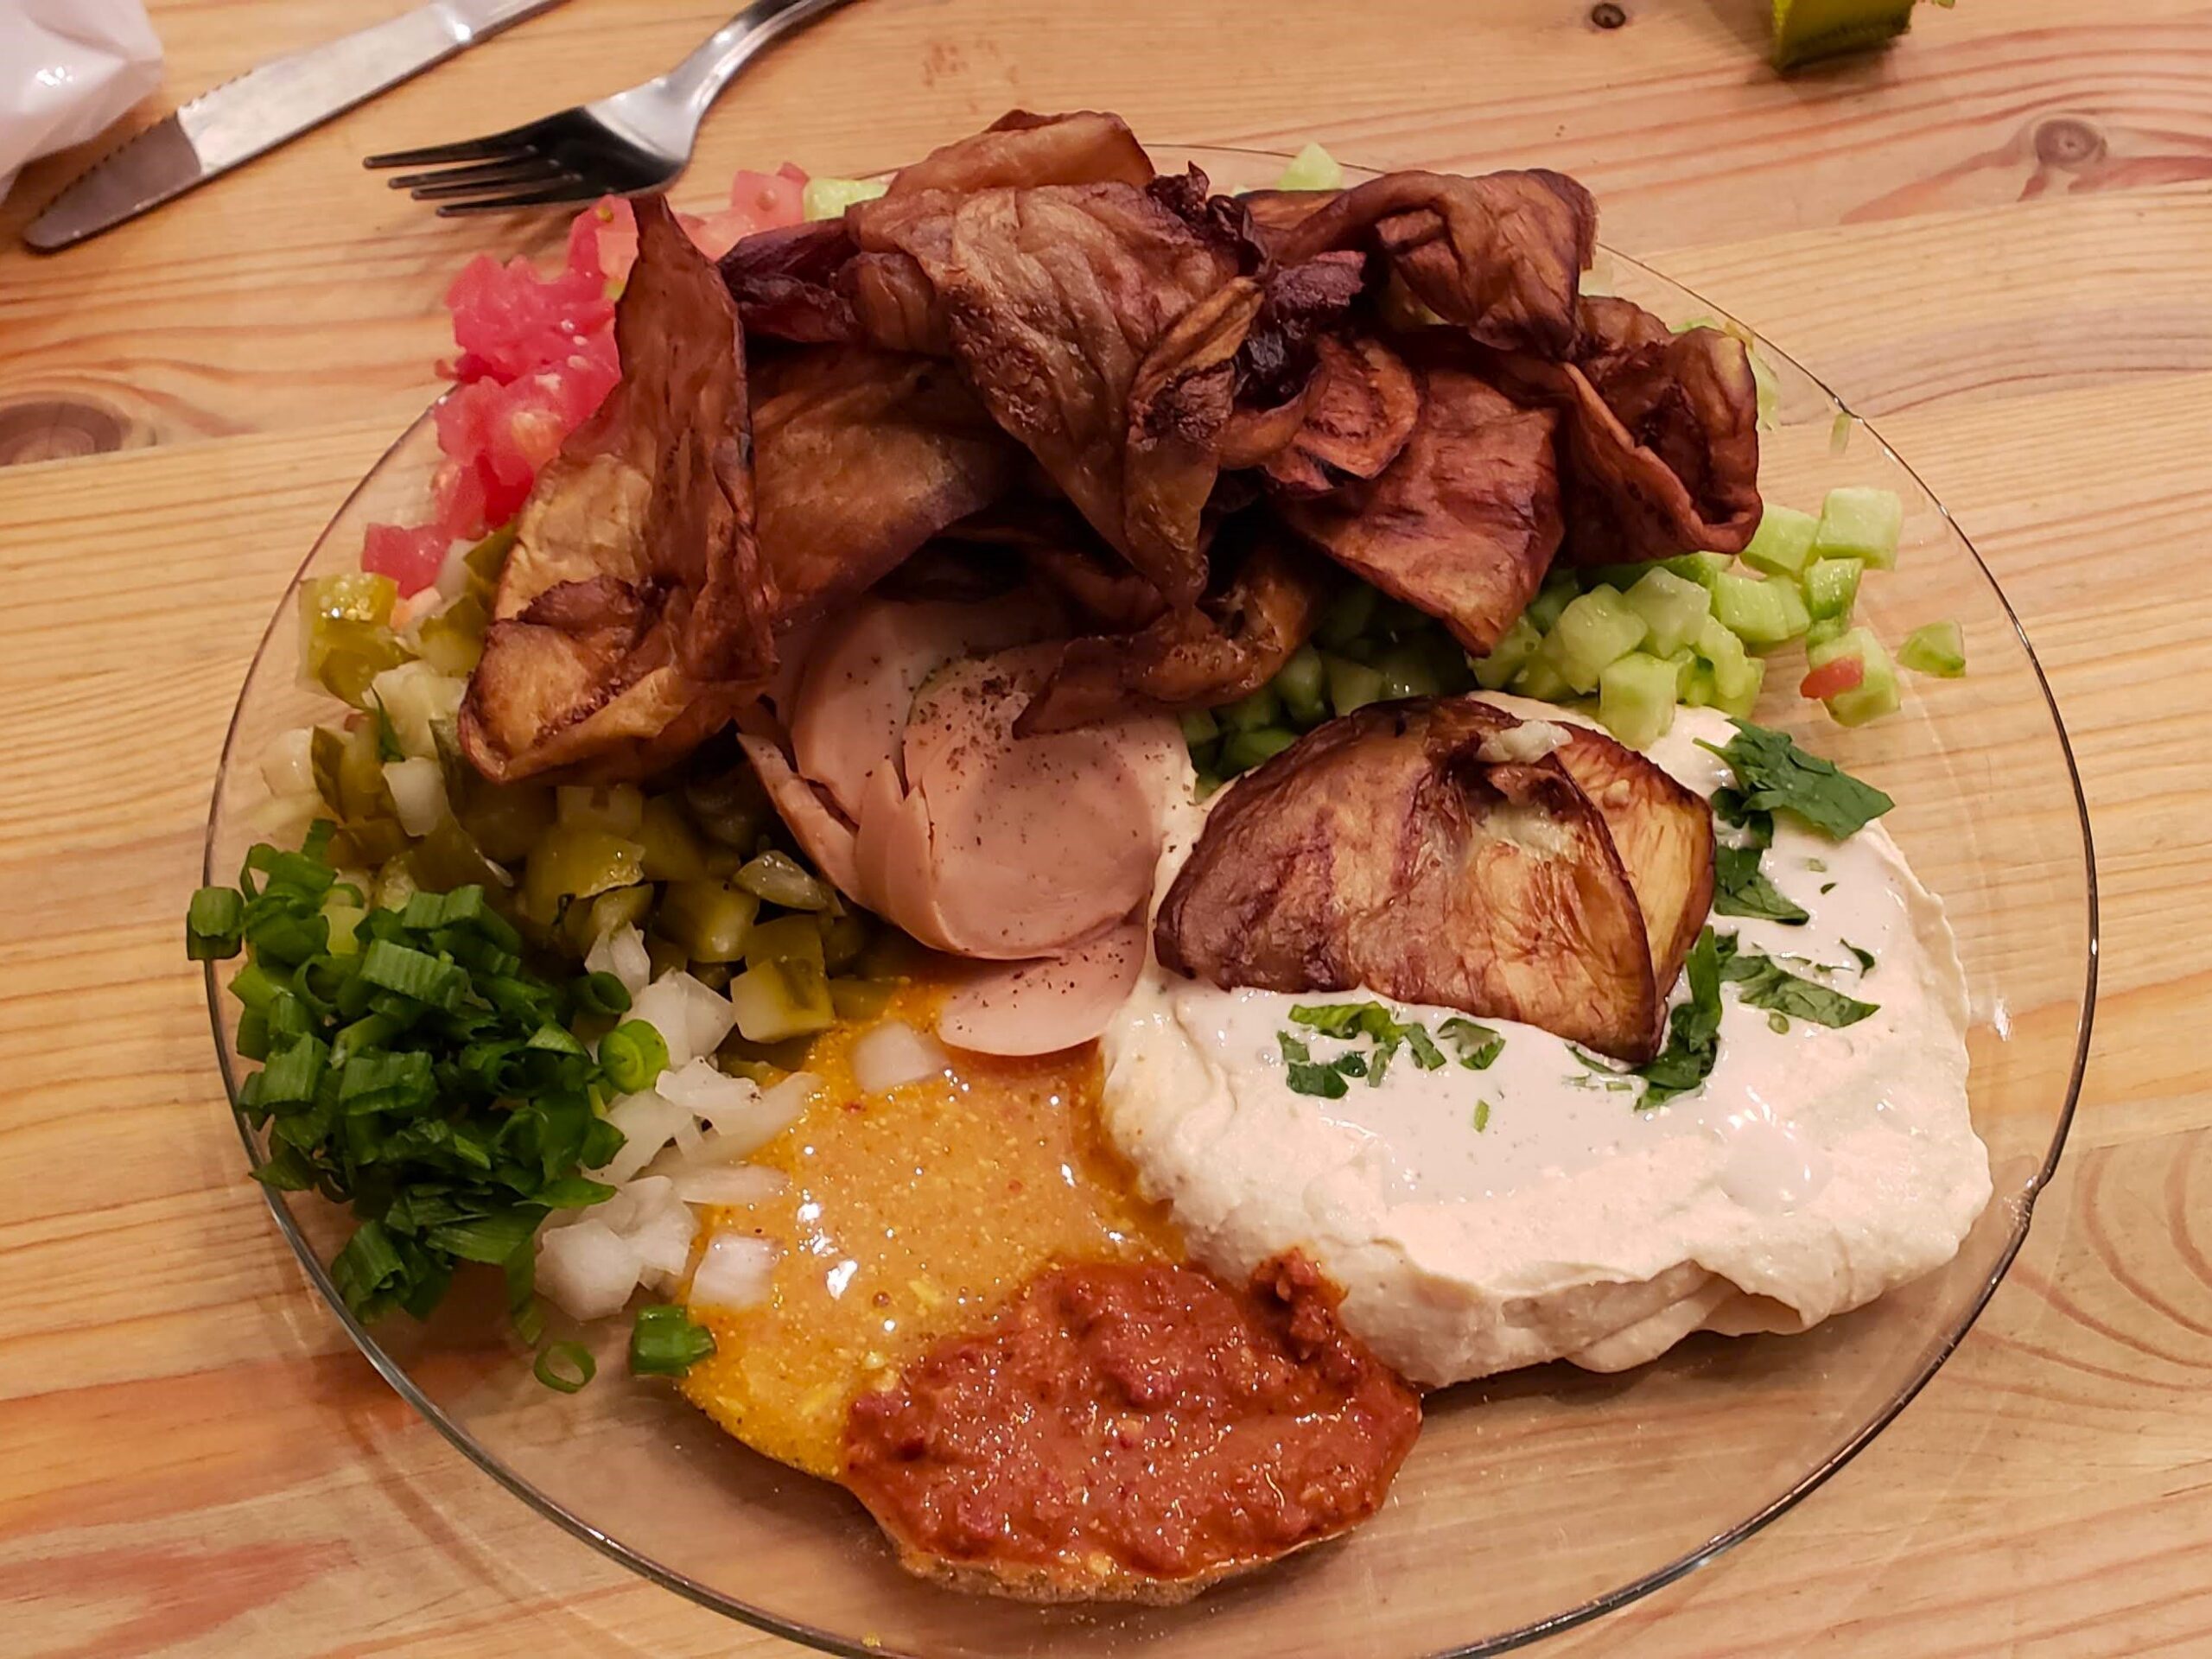 Sabich Plate at Sabich Restaurant Jerusalem